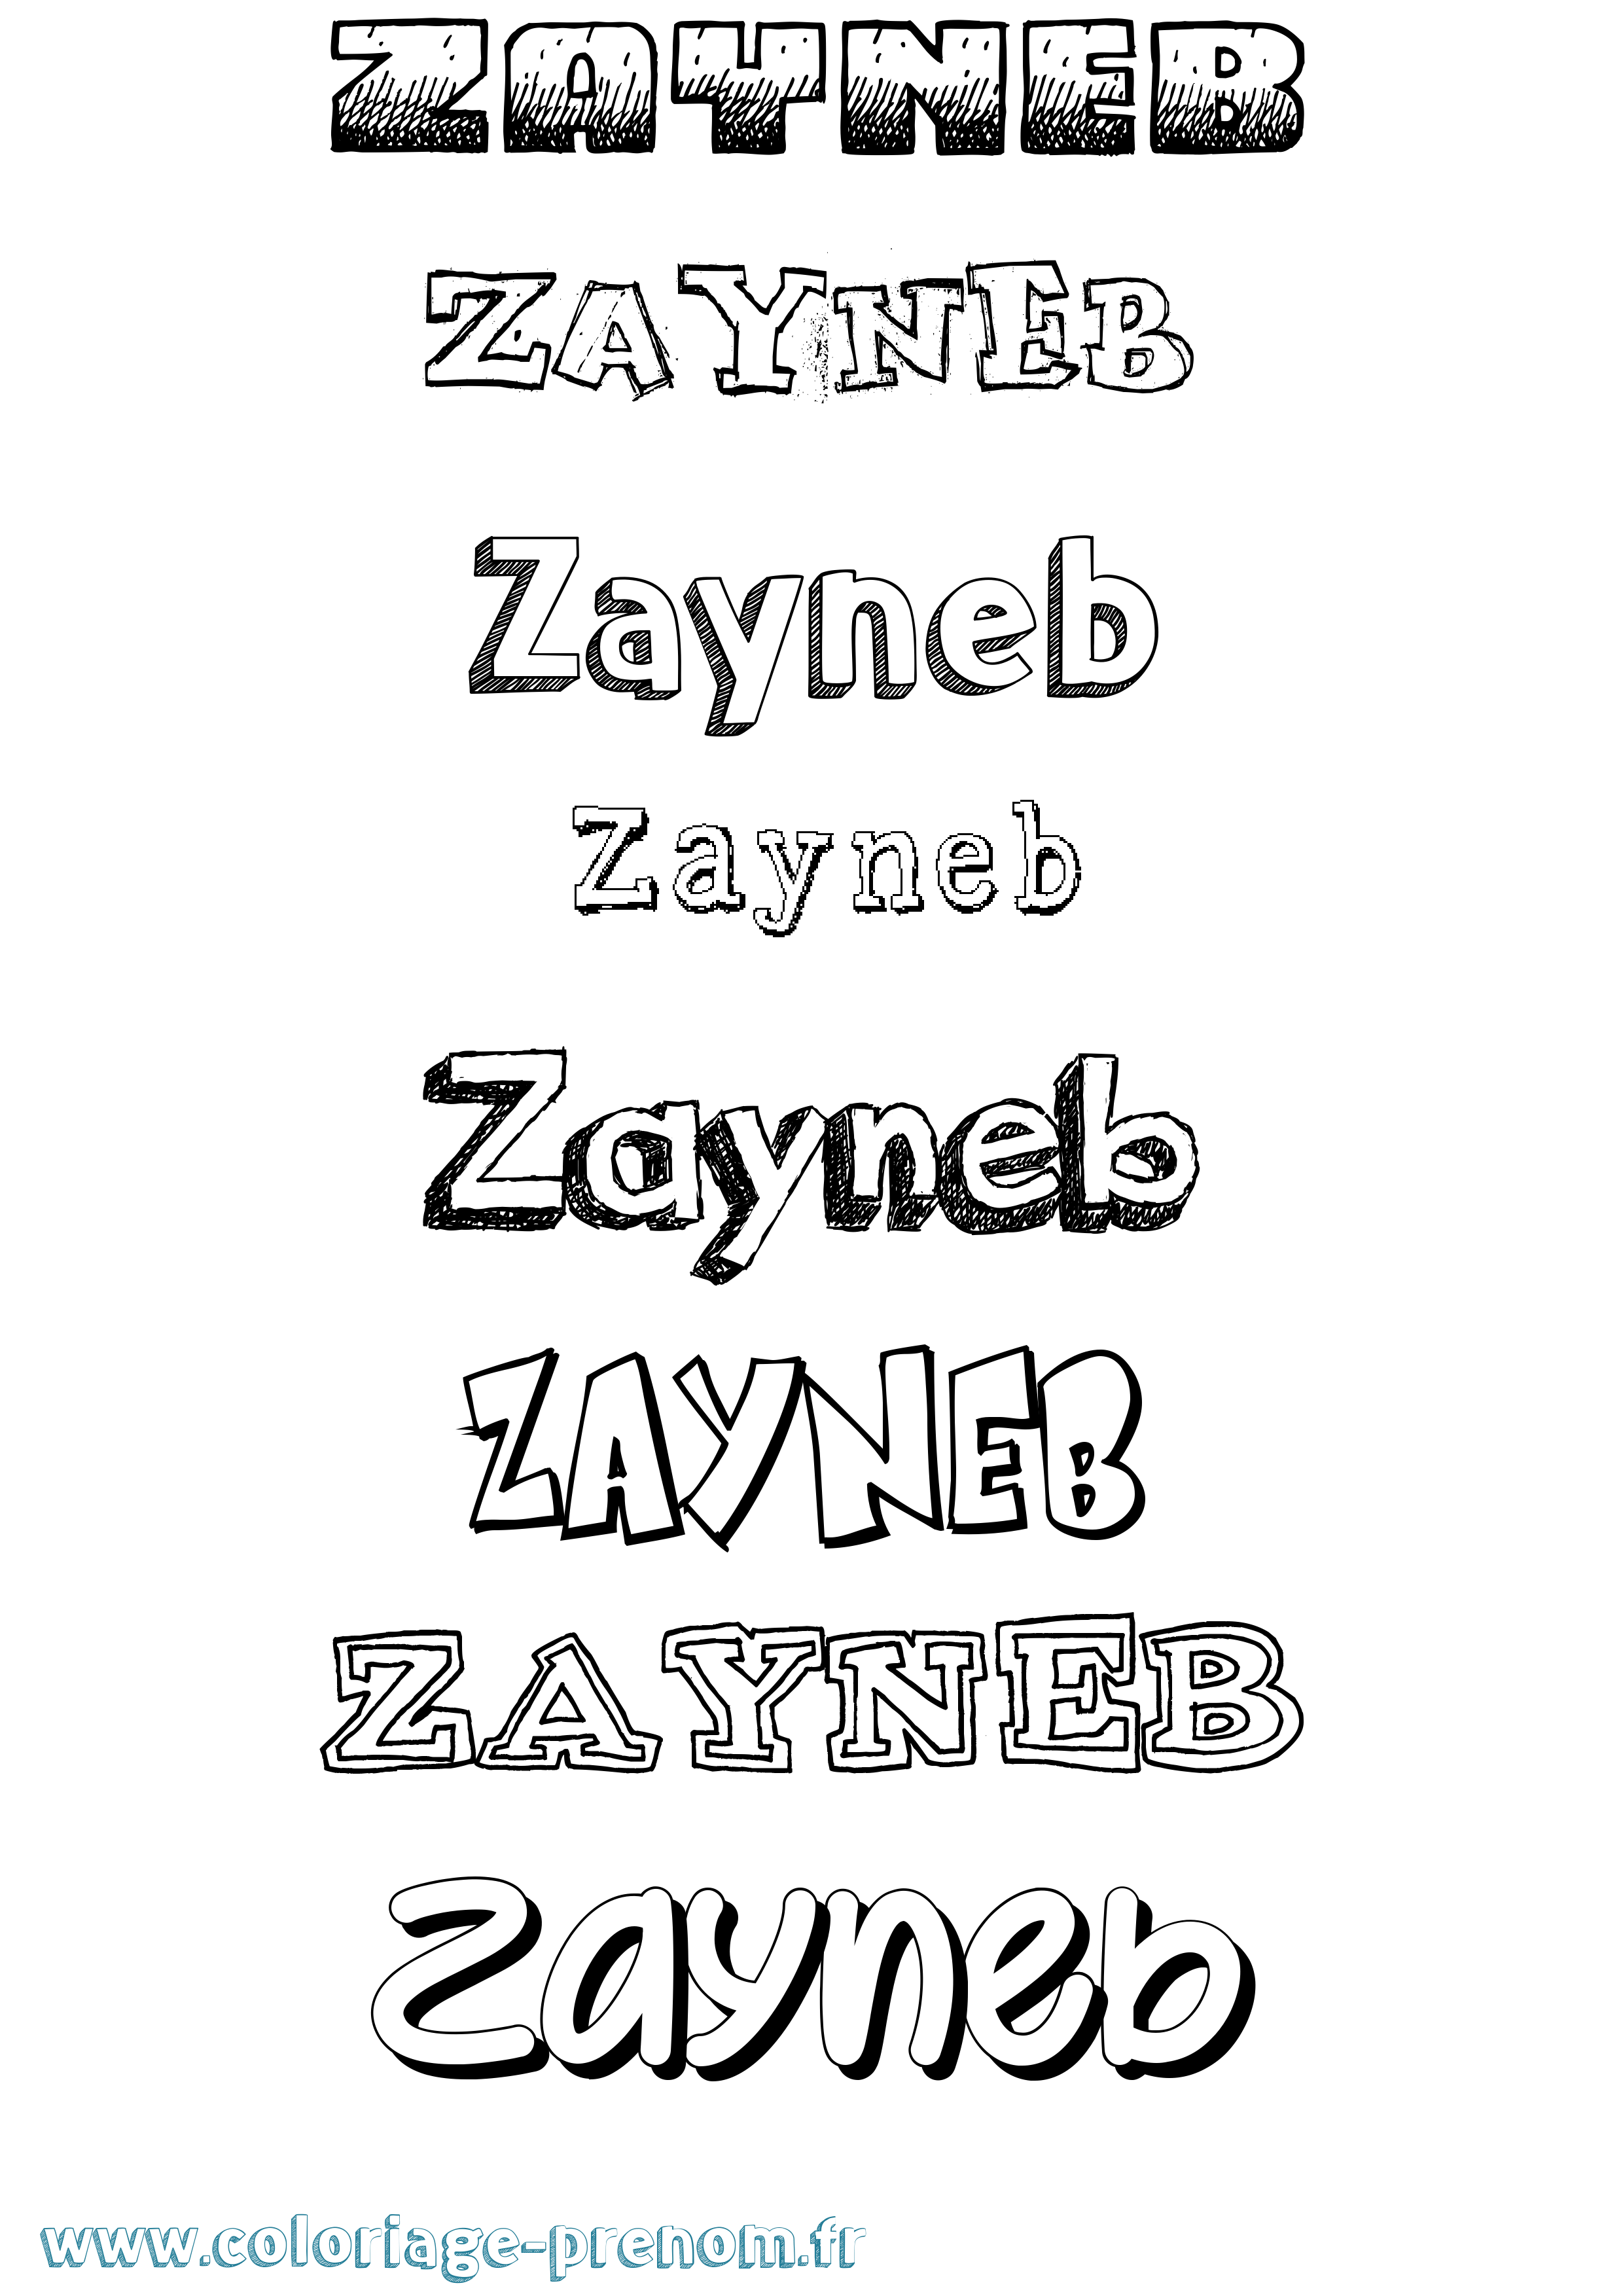 Coloriage prénom Zayneb